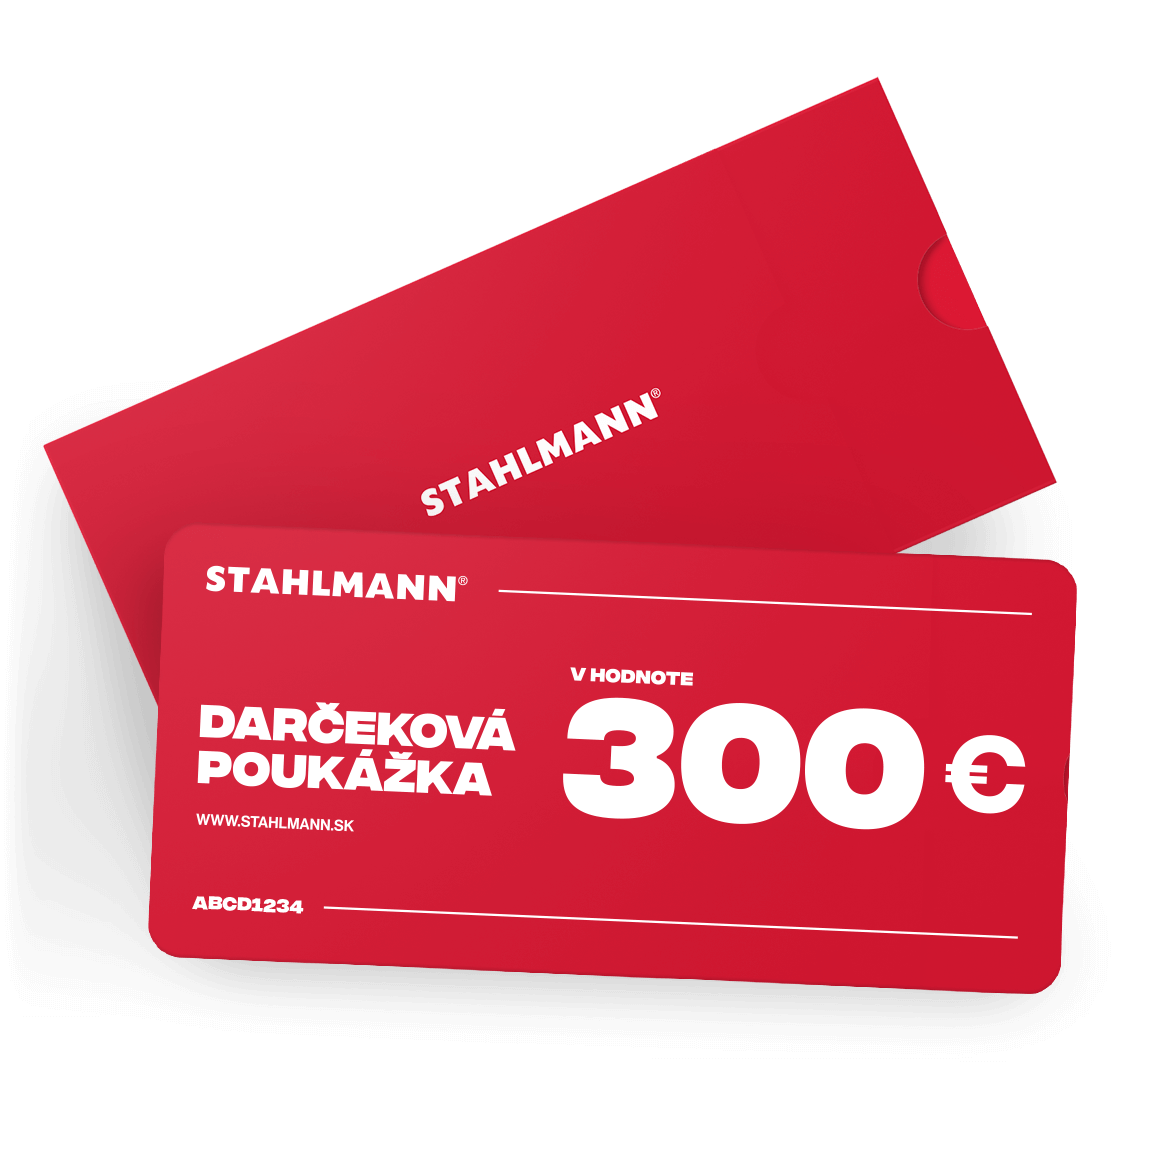 E-shop STAHLMANN 300€ Darčeková poukážka VOUCHER 300€